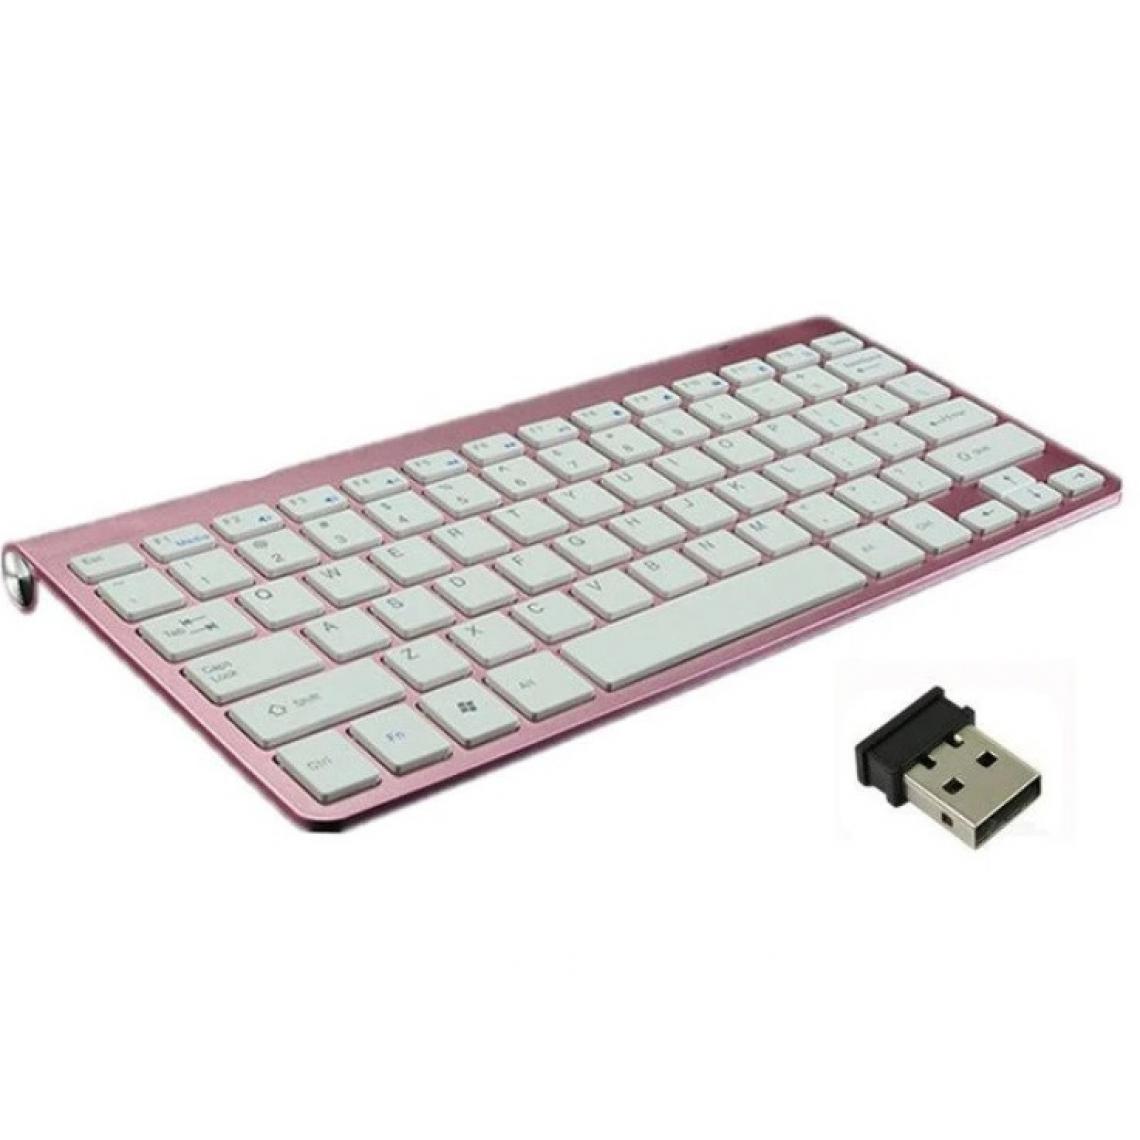 Shot - Clavier Sans Fil Metal pour PC HP USB QWERTY Piles (ROSE) - Clavier